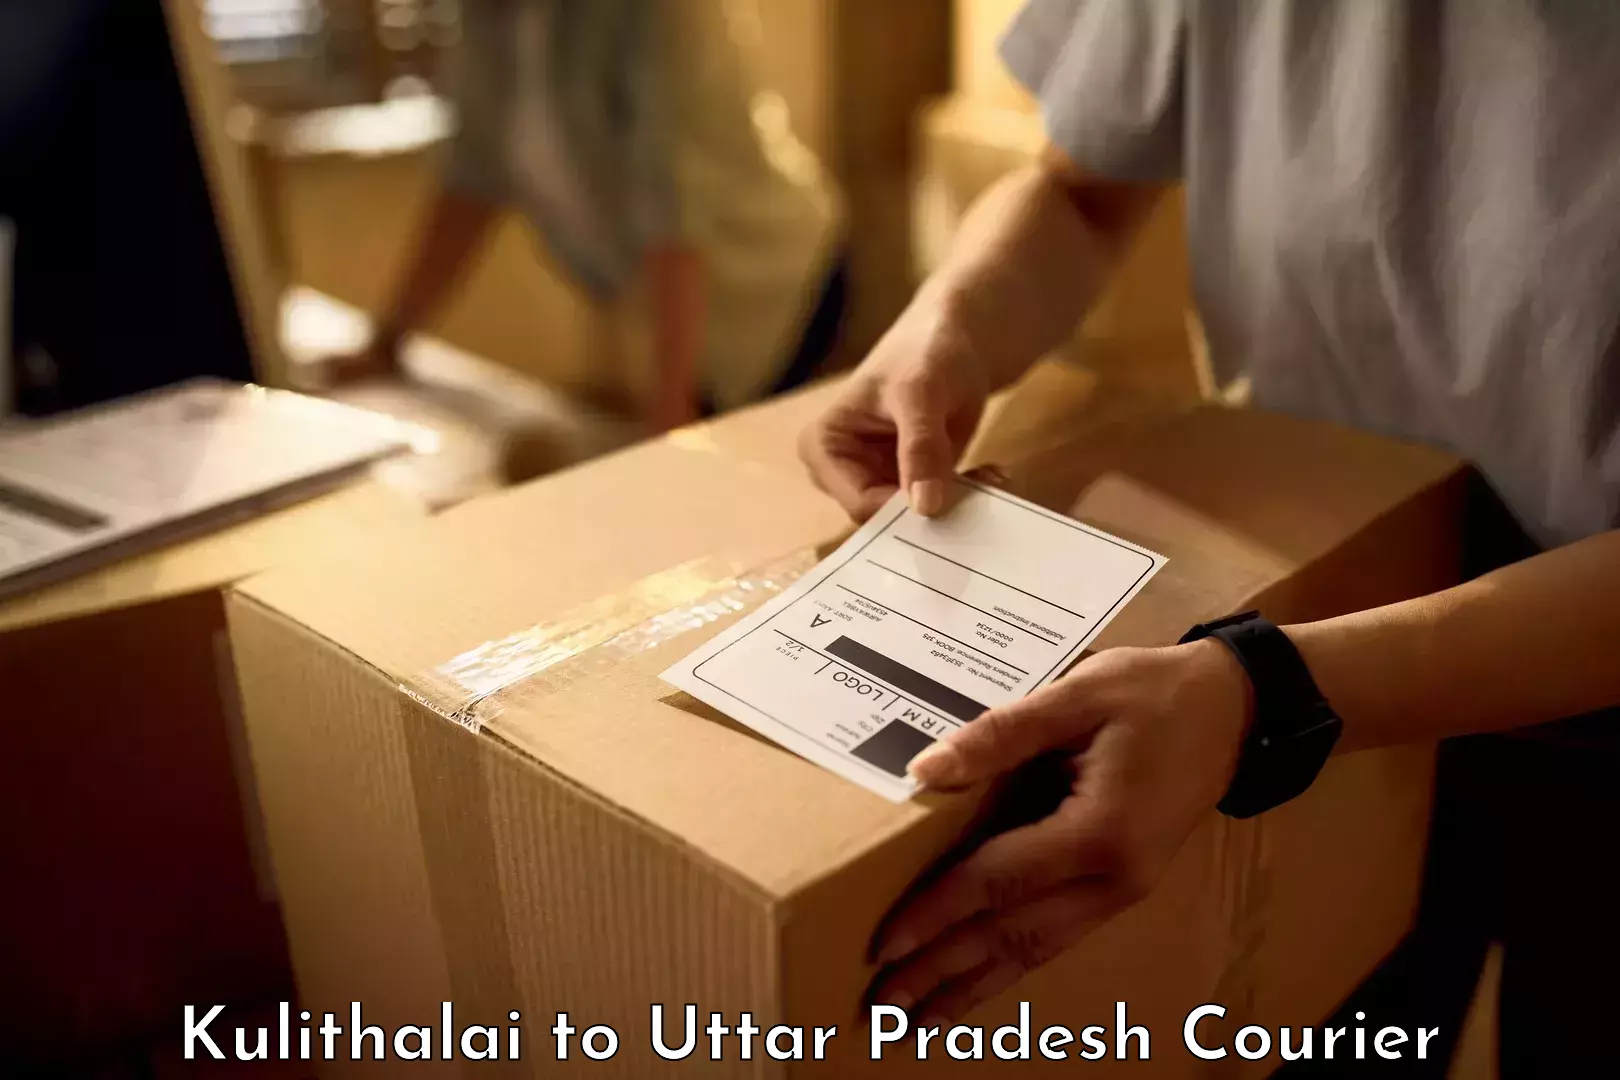 Baggage transport innovation Kulithalai to Uttar Pradesh